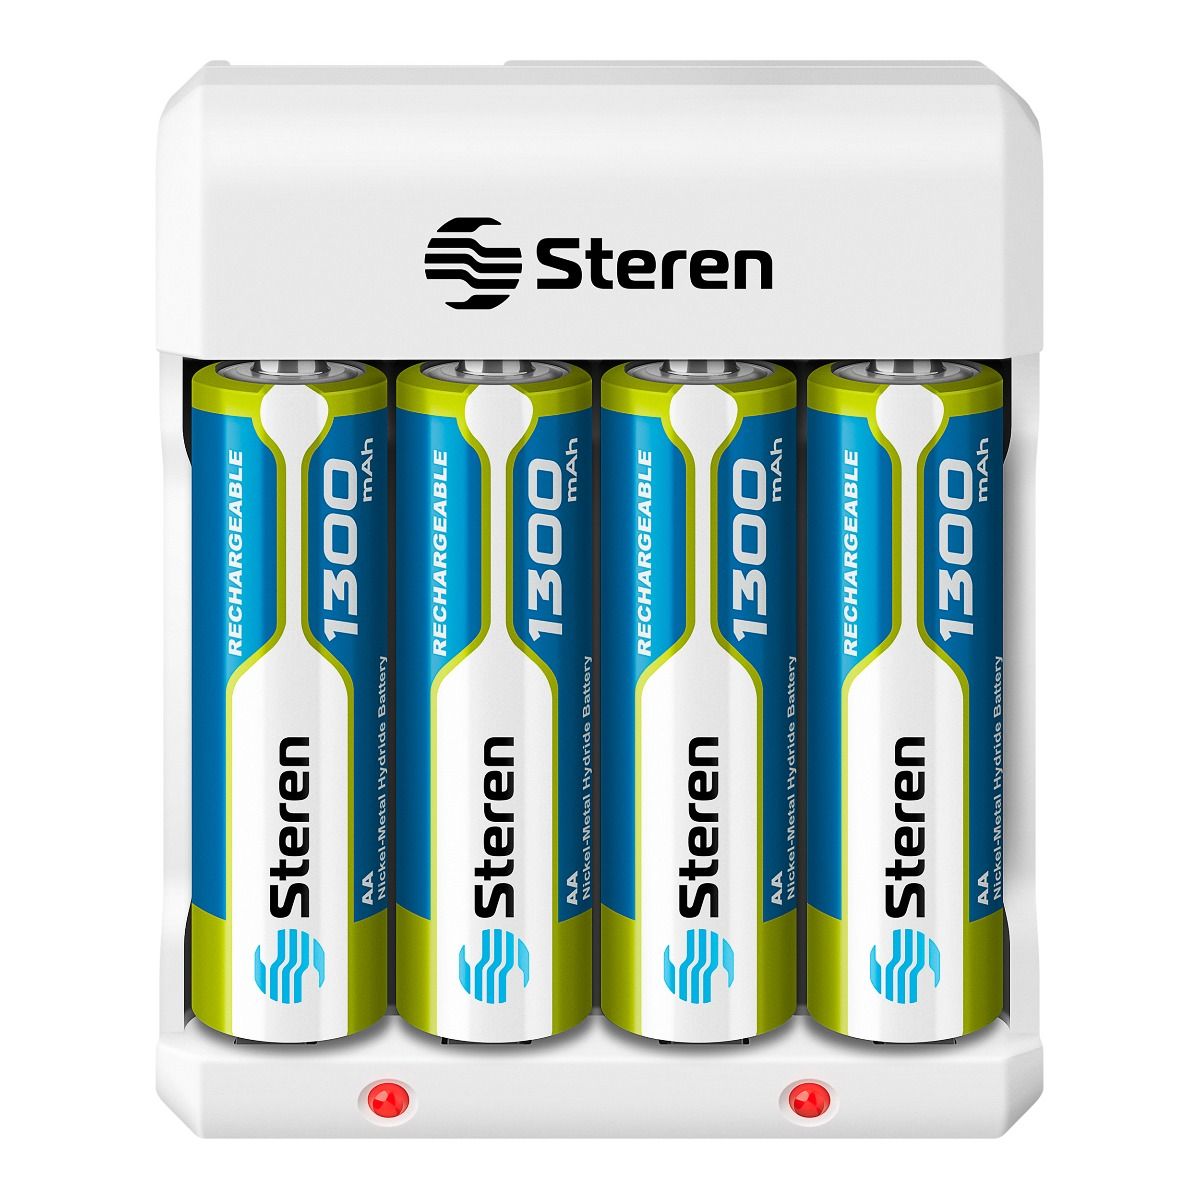 20 Pack Universal AAA Baterias Recargables Alta Capacidad 1.2V 600mAh  Triple AAA